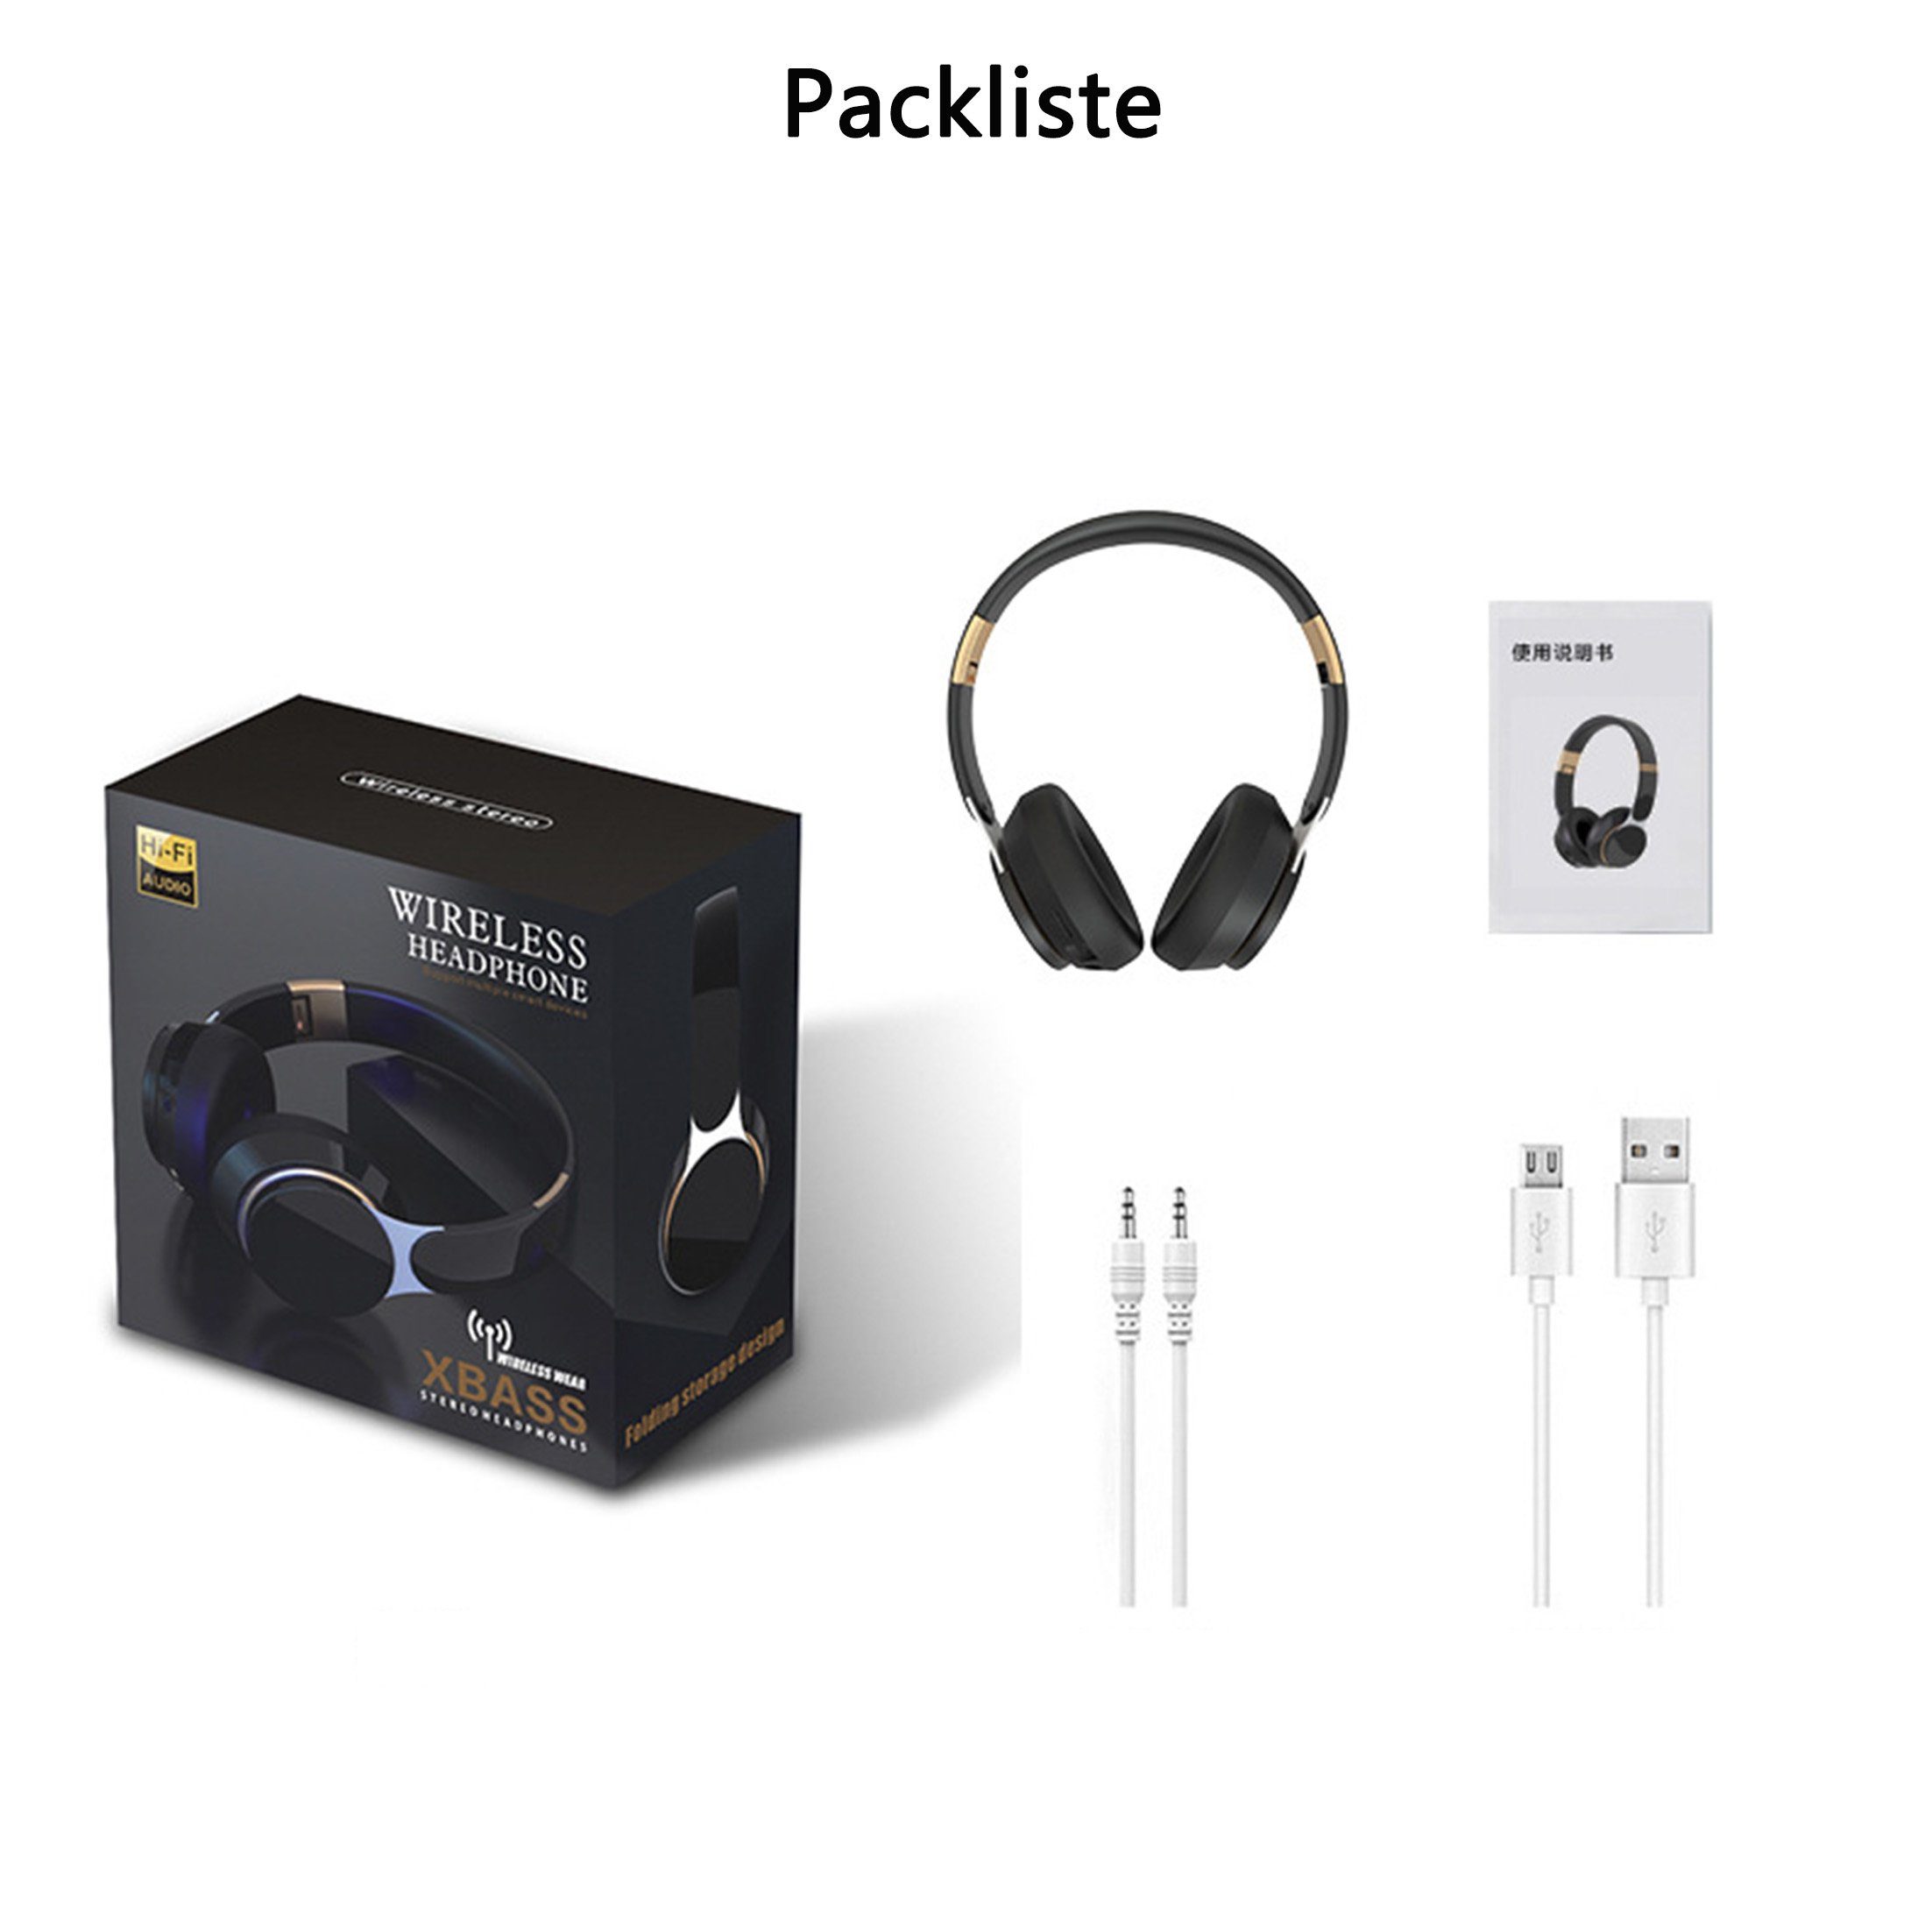 Diida Kabellose Kopfhörer,Sport-Kopfhörer,Bluetooth,Kabelgebundene faltbar, Stereo-Ton) Grün Over-Ear-Kopfhörer (Einziehbar und